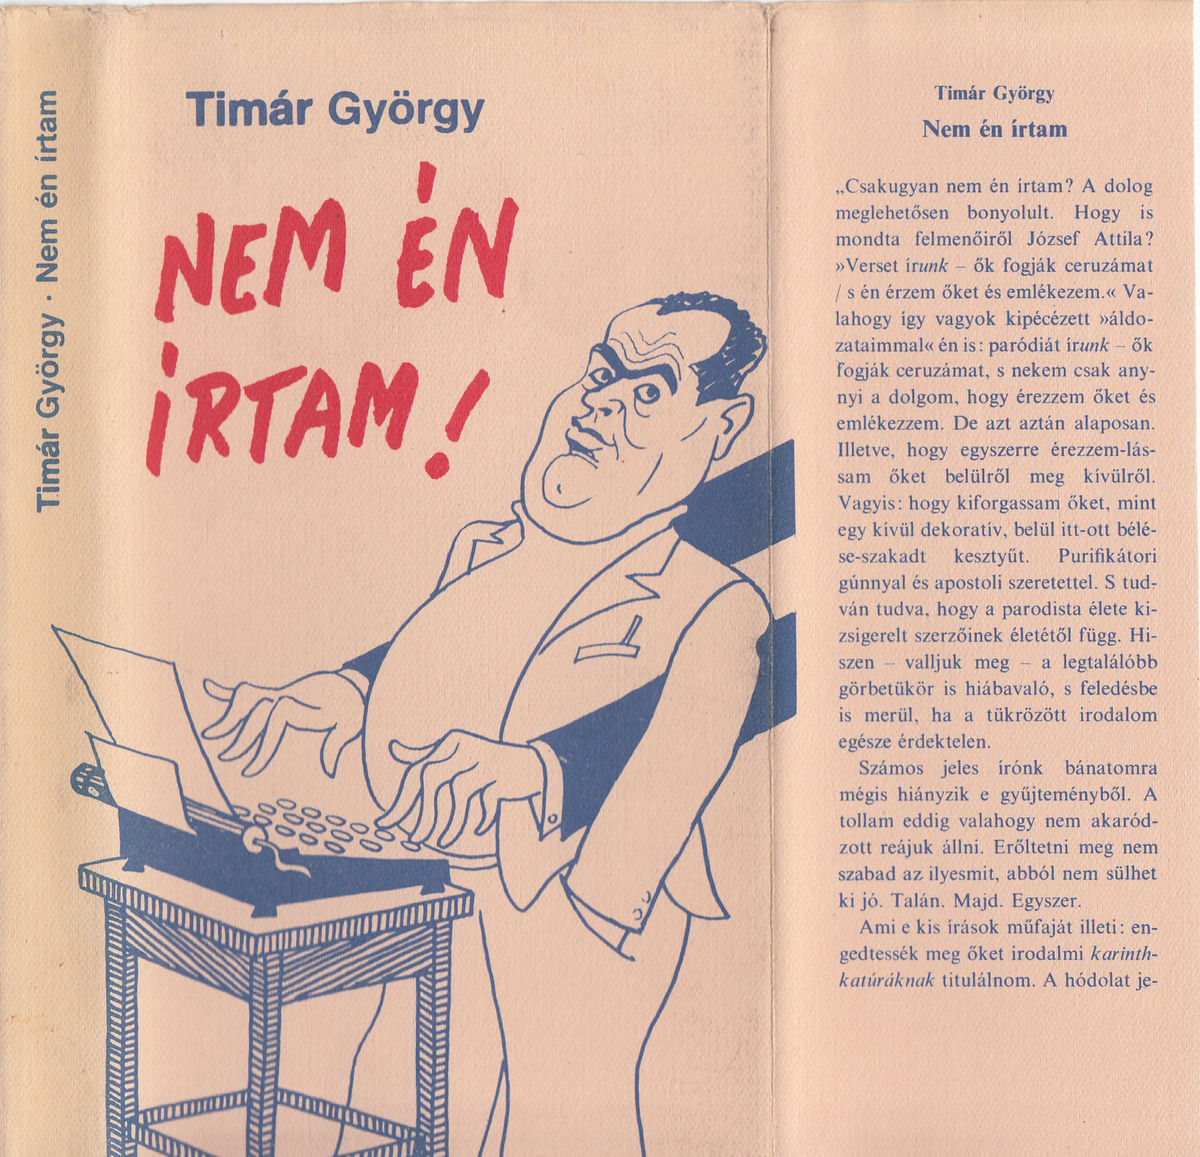 Timár György: Nem én írtam, irodalmi karinthkatúrák, Timár György ; [ill.] Kaján Tibor | Library OPAC